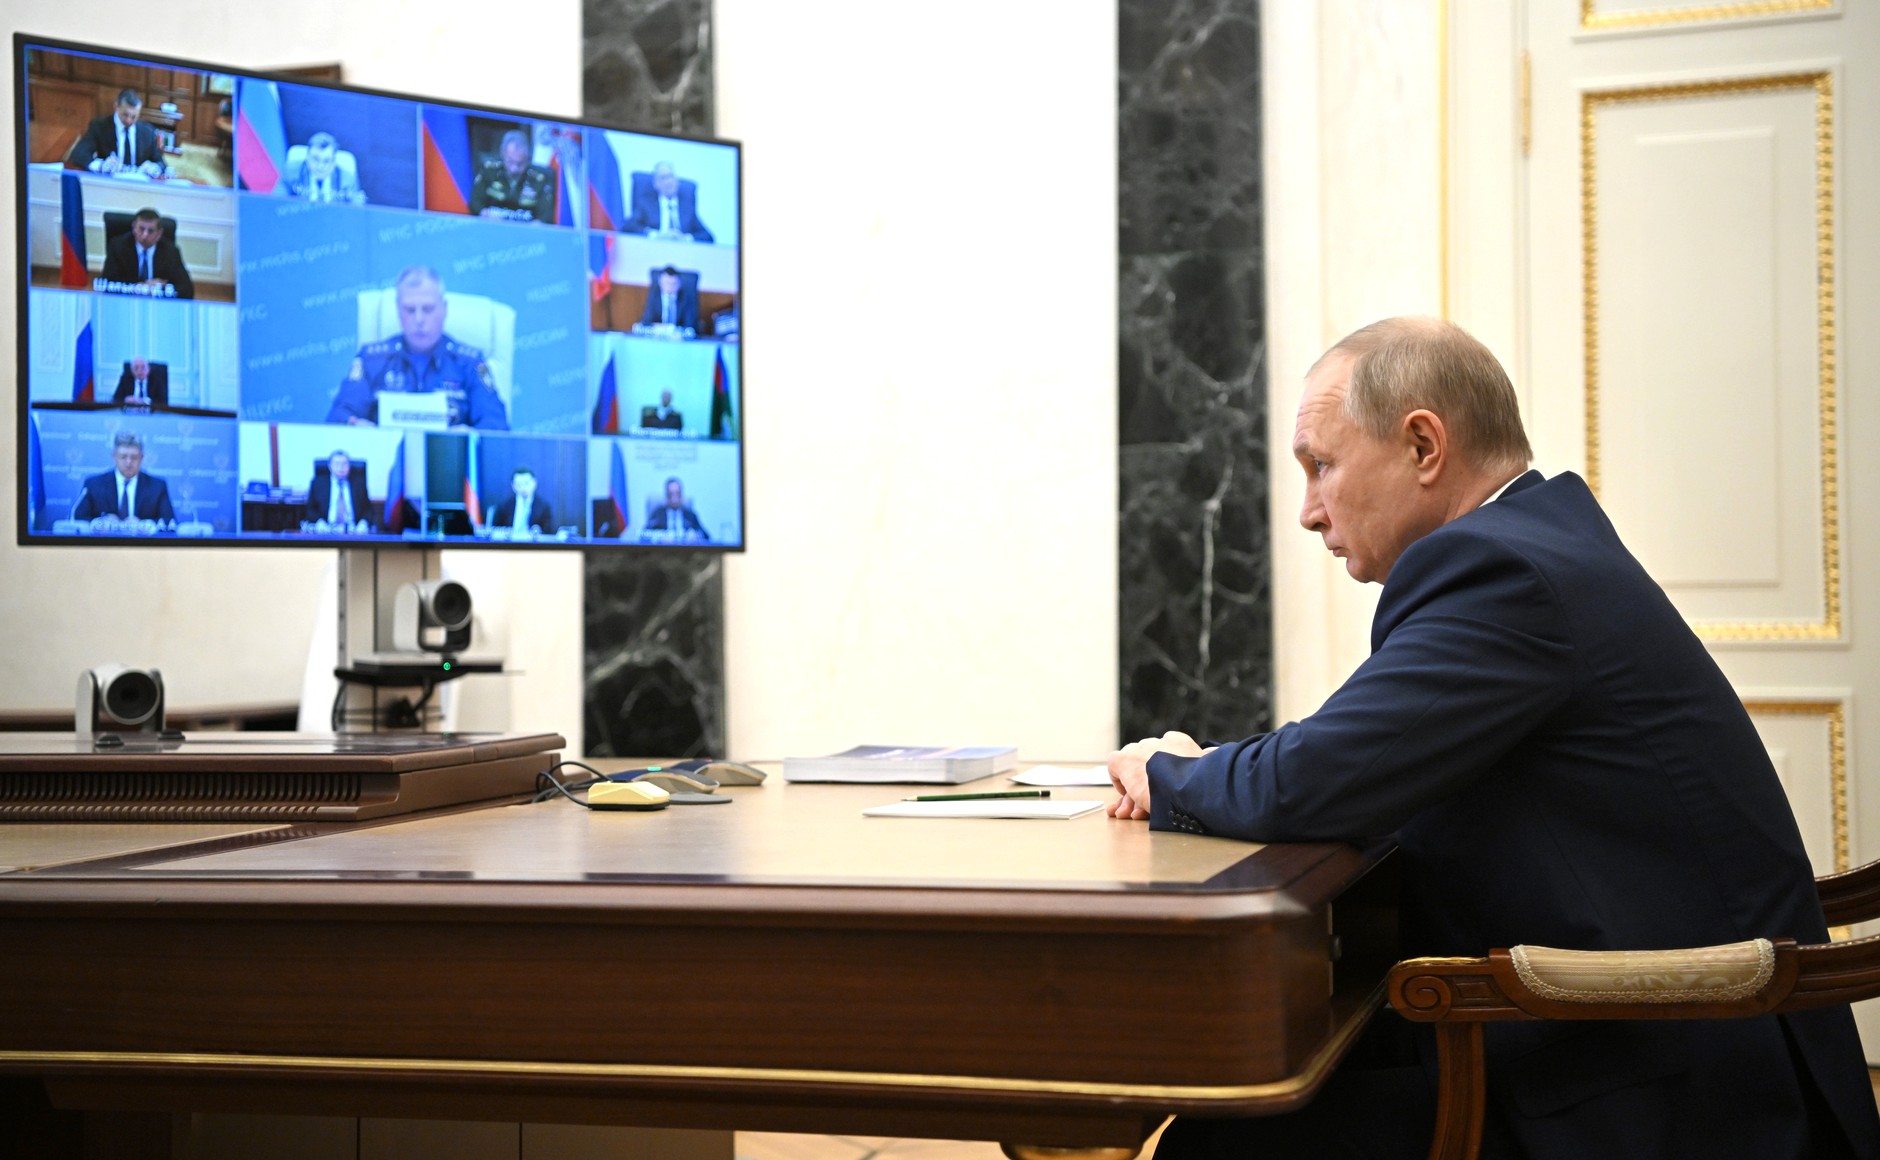  Επικίνδυνη εμμονή να ηττηθεί ο Πούτιν»- Ένας δυτικός αναλυτής προειδοποιεί για το βαρύ τίμημα.